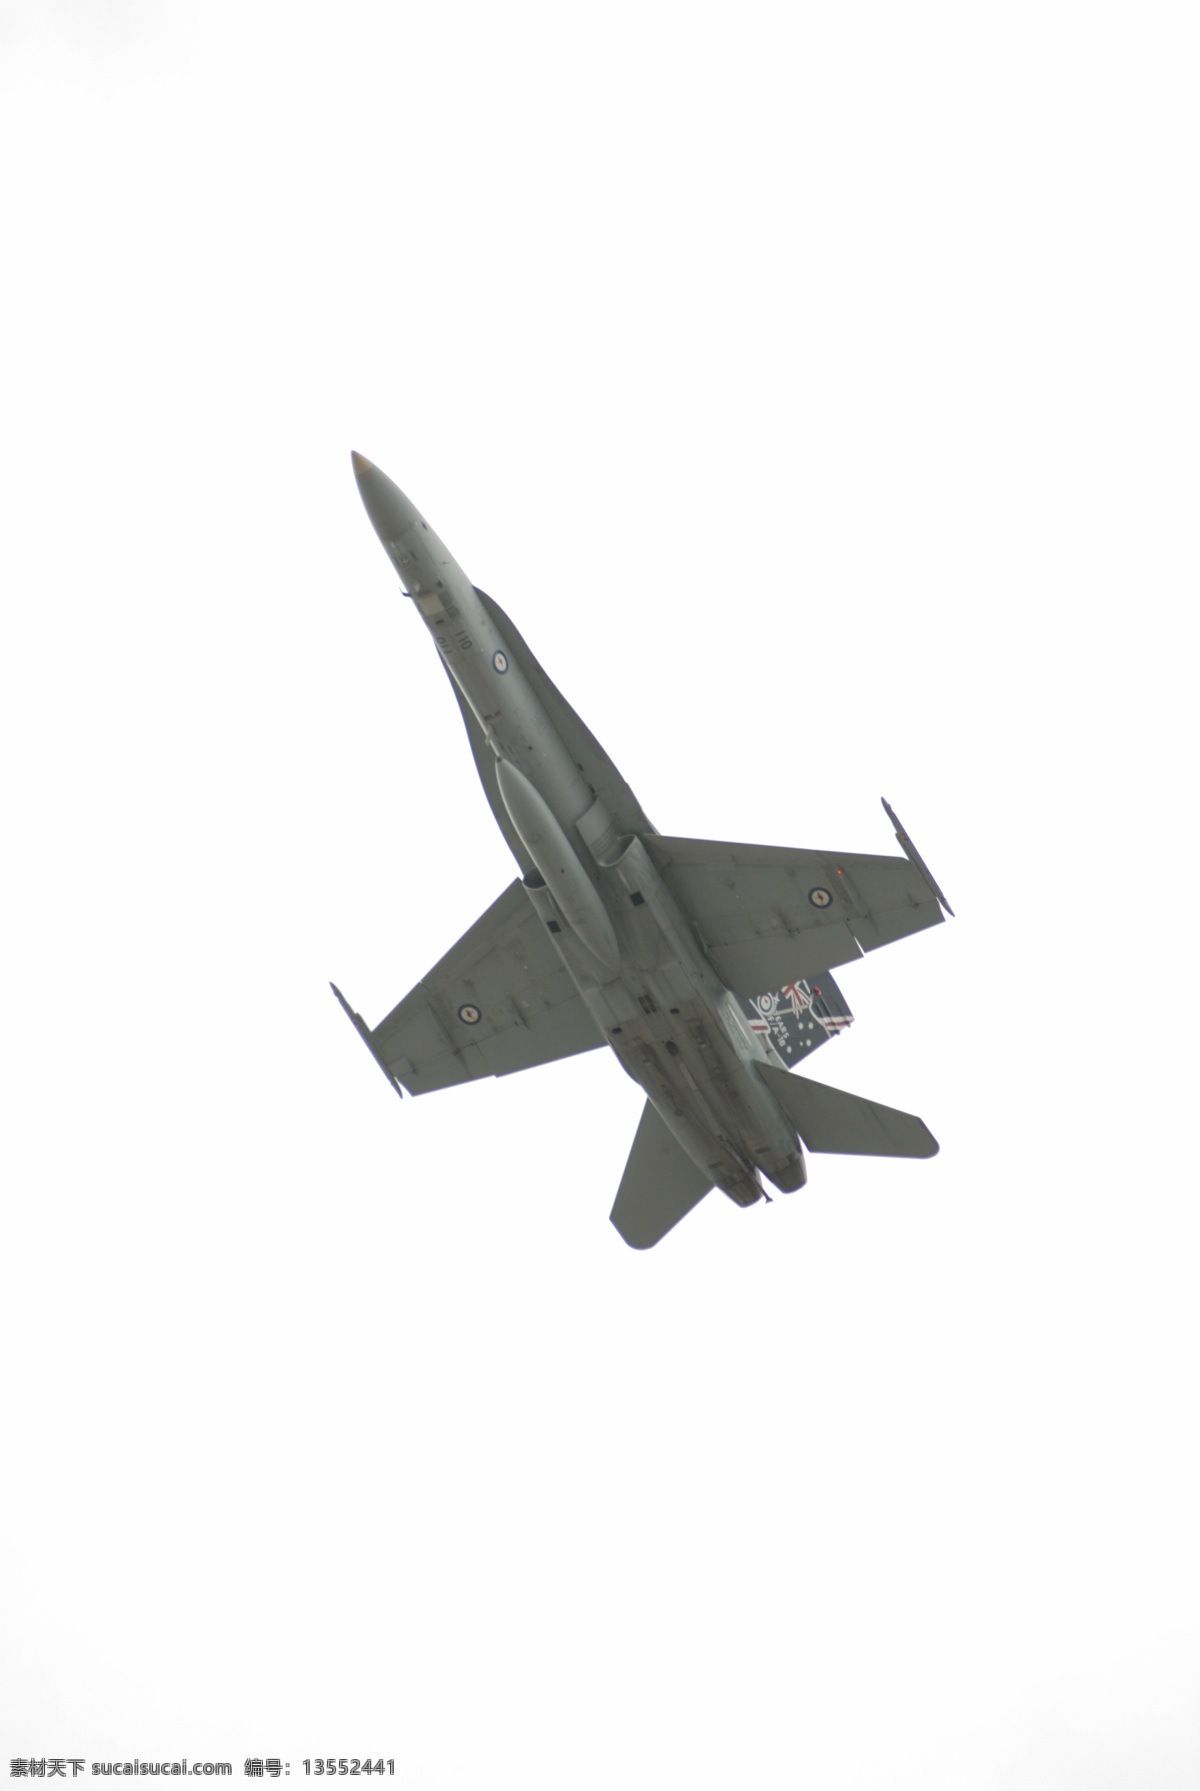 天空 中 飞行 战斗机 飞机 飞翔 高速 超音速 白云 喷气式 军事演习 摄影图 特写 高清图片 军事武器 现代科技